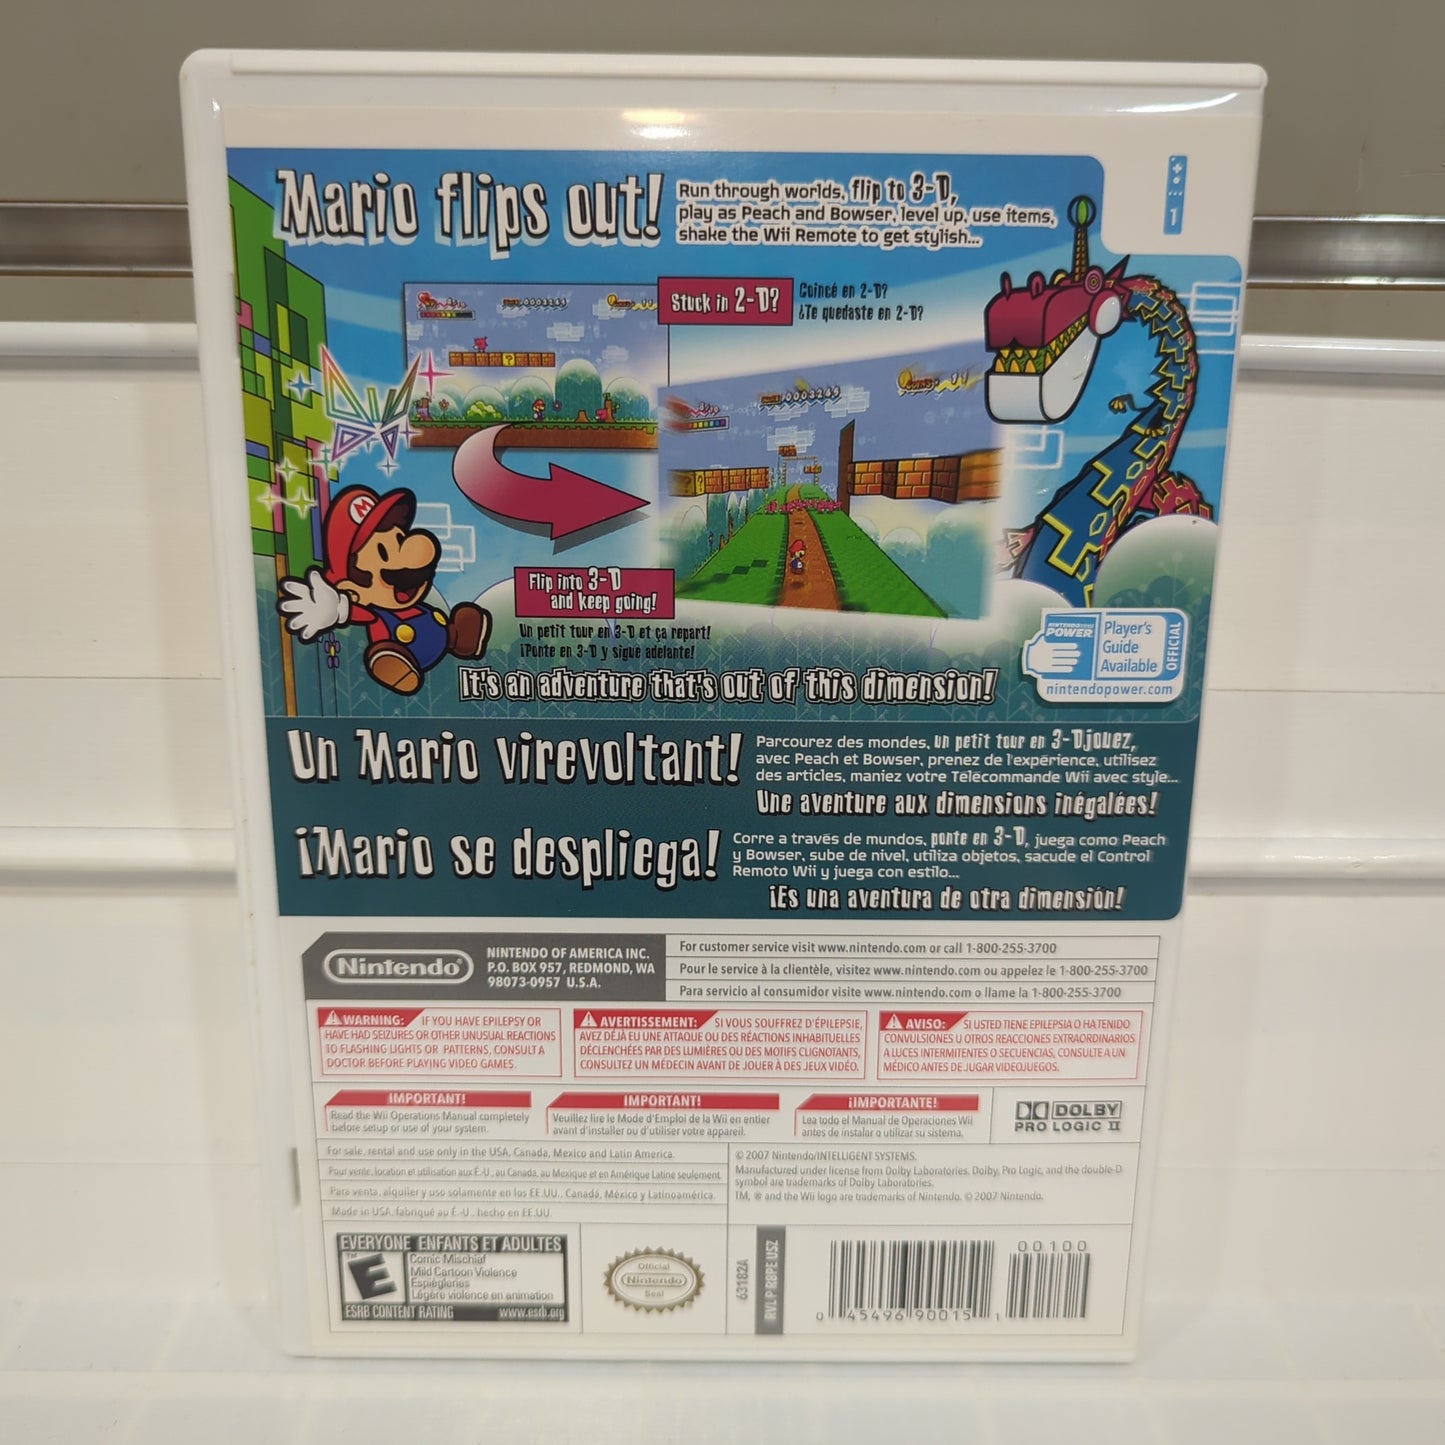 Super Paper Mario - Wii